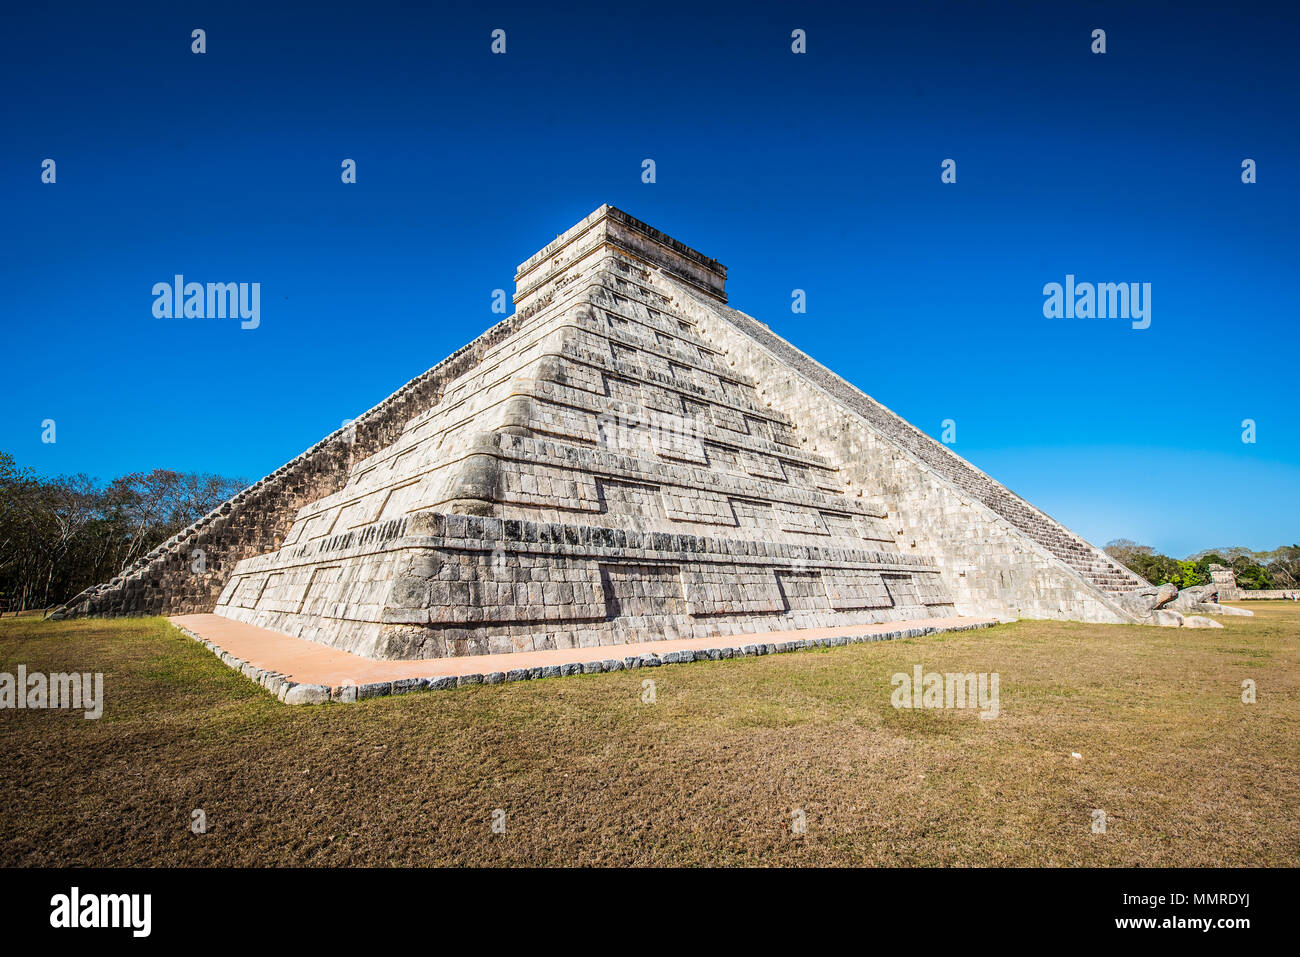 Chichen Itza - El Castillo Pyramid - Ancient Maya Temple Ruins in Yucatan, Mexico Stock Photo